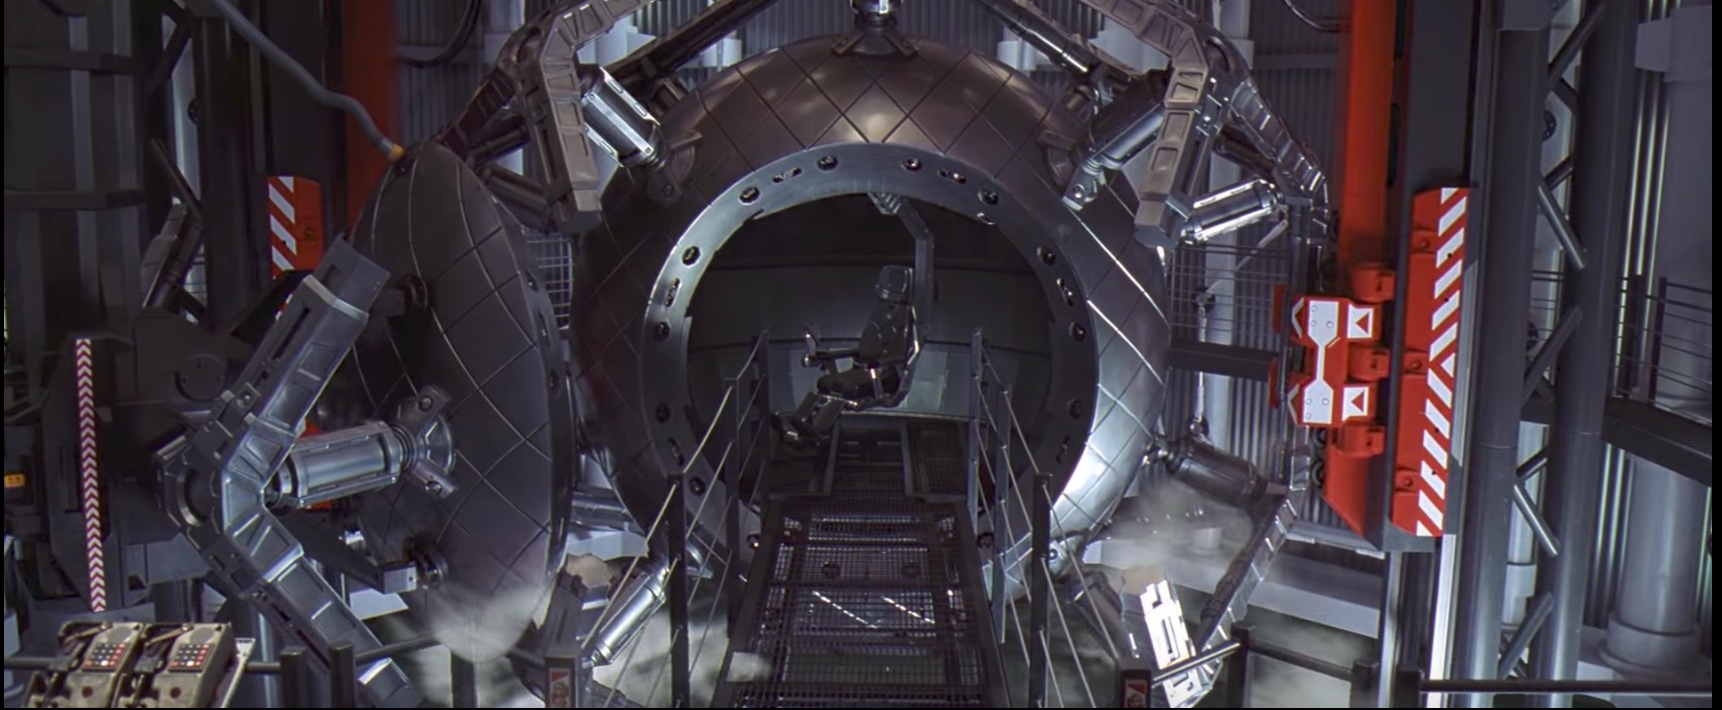 Pirms 20 gadiem Holivuda iedomājās tārpu atveres mašīnu Kenedija kosmosa centrā